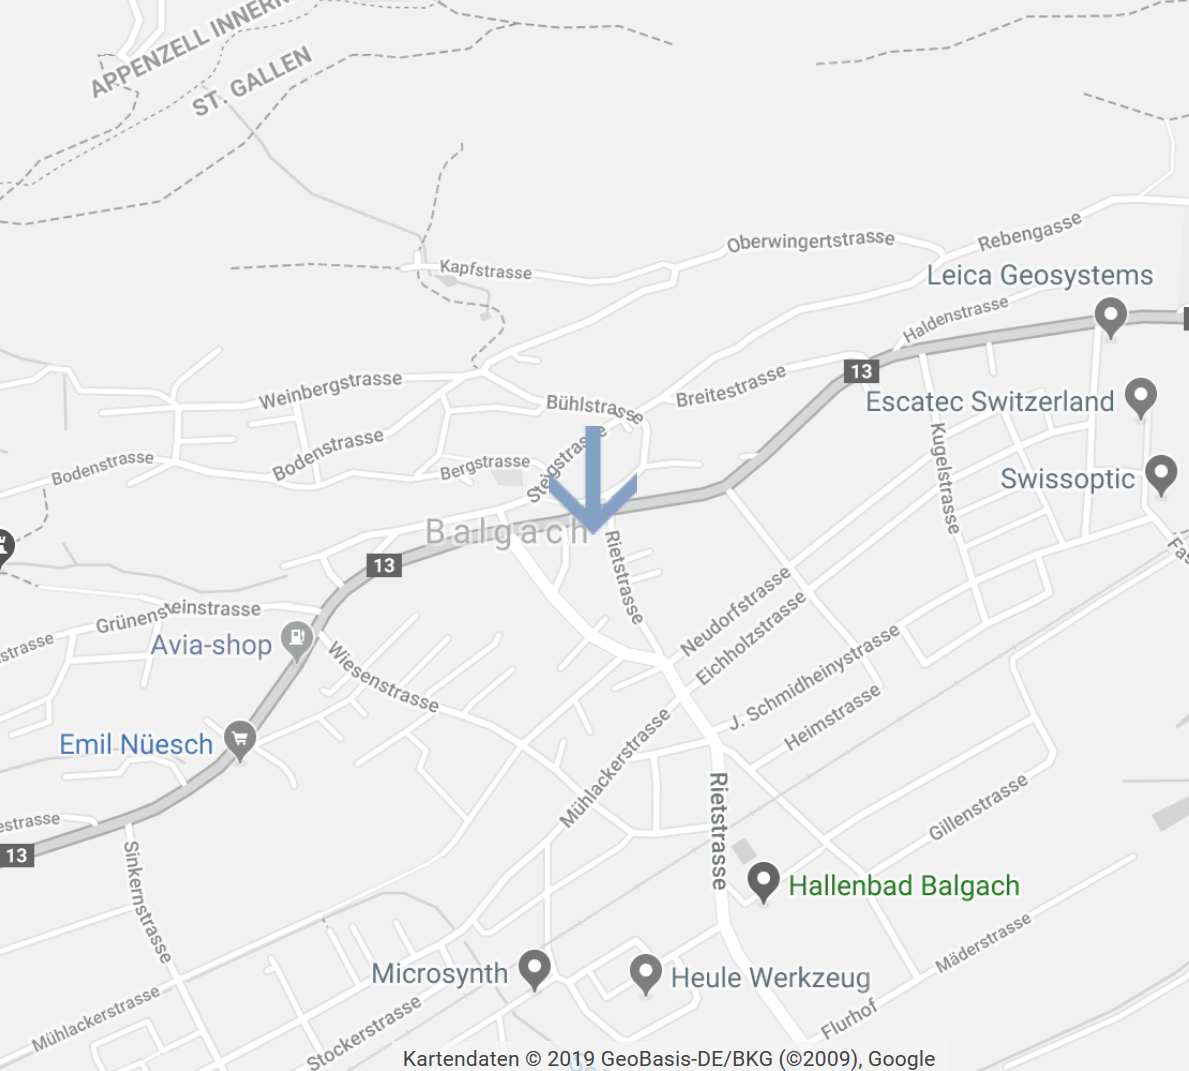 <a href="https://www.google.com/maps/@47.406721,9.607705,12z">Rietpark – Im Zentrum von Balgach </a><br>